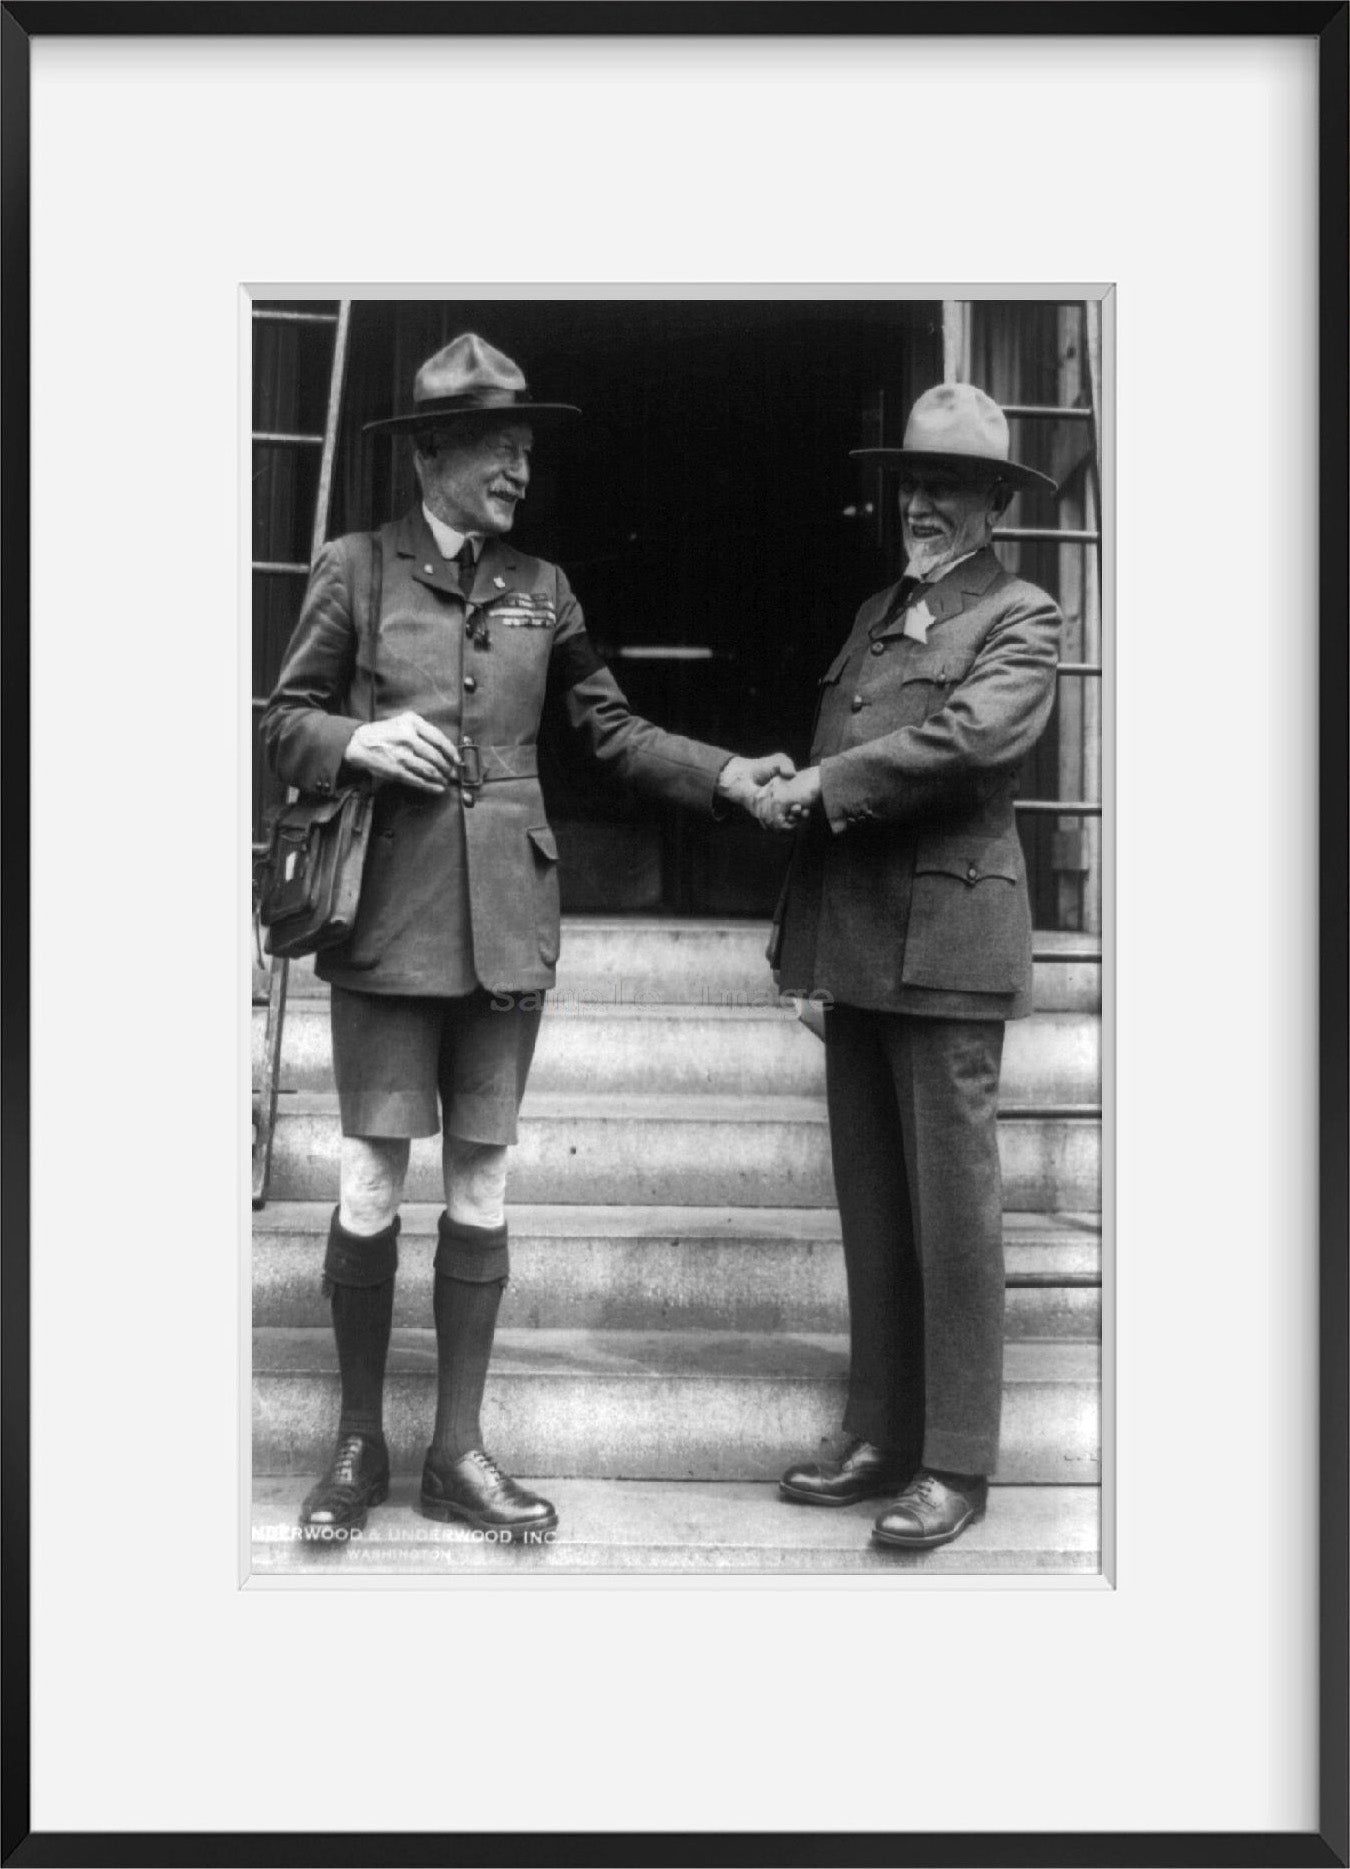 1926 photograph of Lt. Gen. Sir. Robert S.S. Baden-Powell and Daniel C. Beard, a